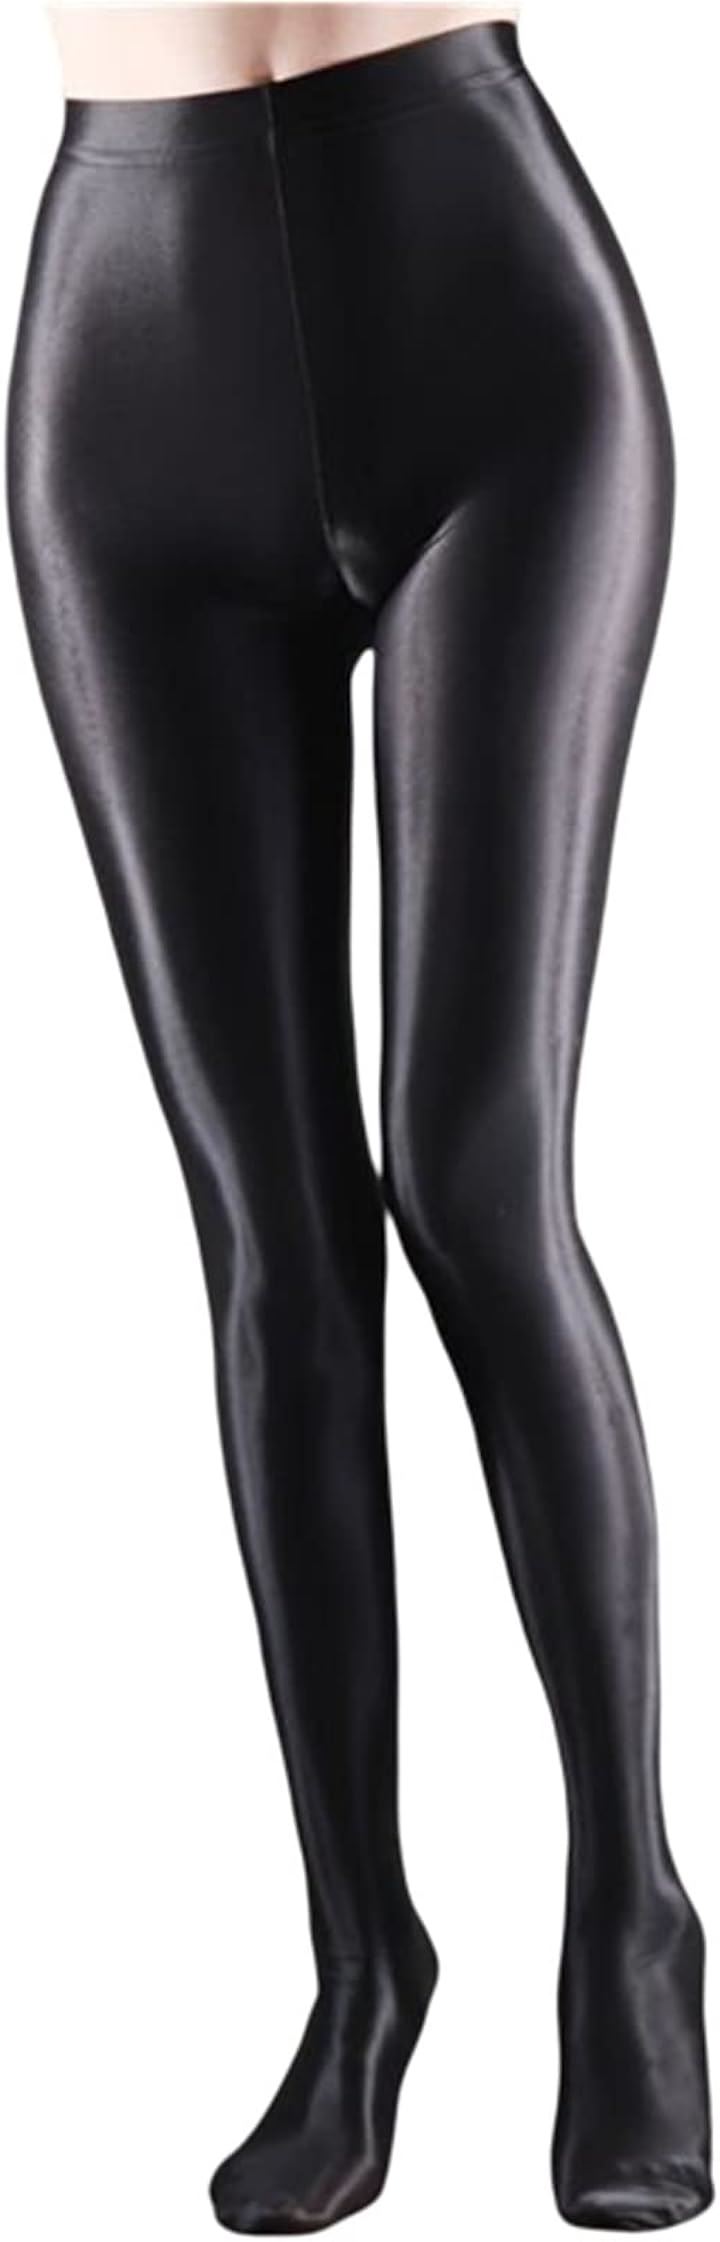 光沢 美脚 タイツ コスプレ ストッキング スパッツ 衣装 つるつる 伸縮 e828( ブラック, XL)